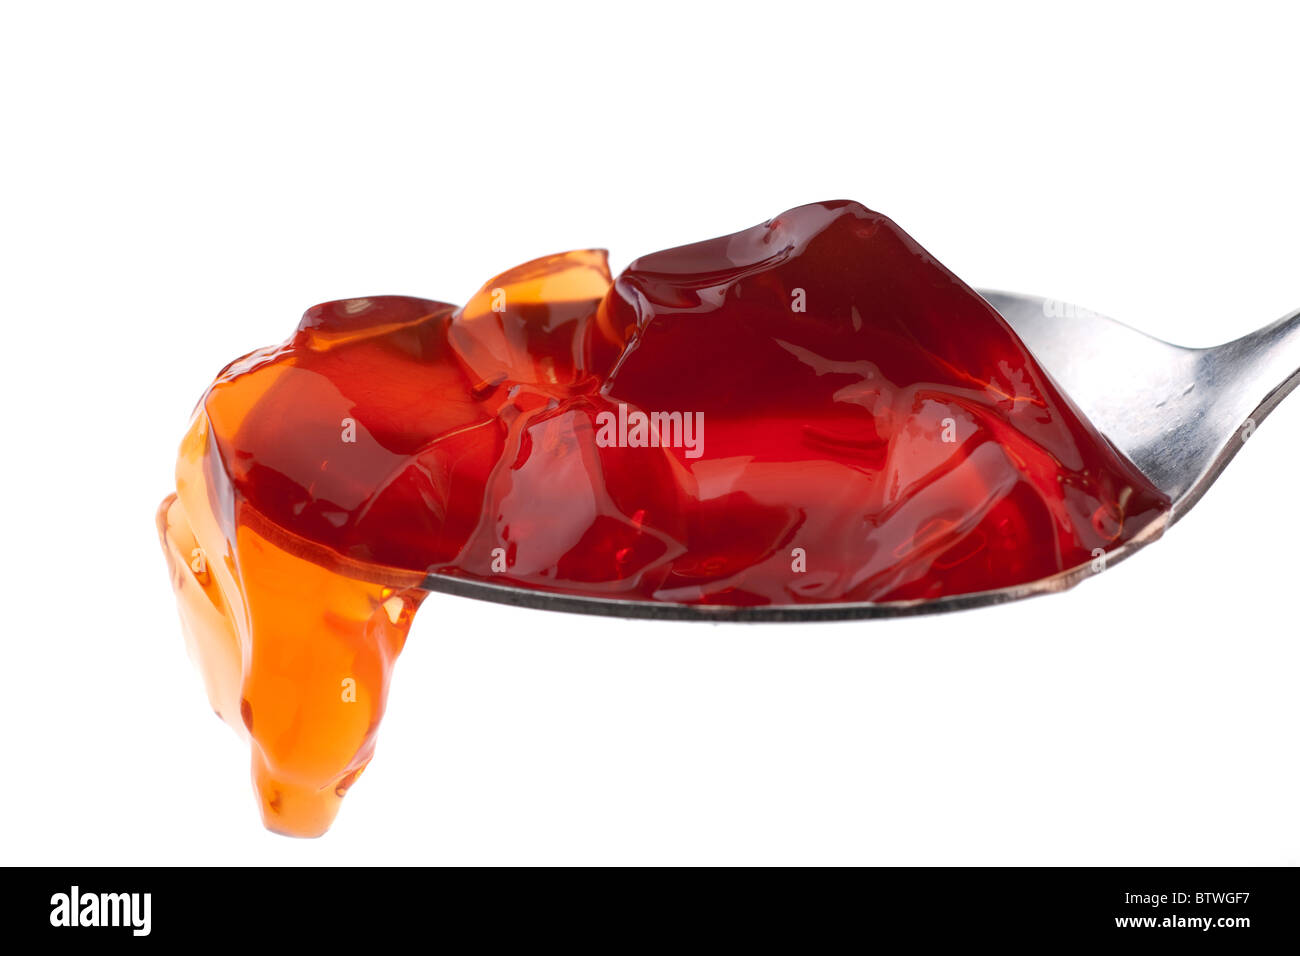 Cucchiaio da tavola di fragola rossa jelly Foto Stock